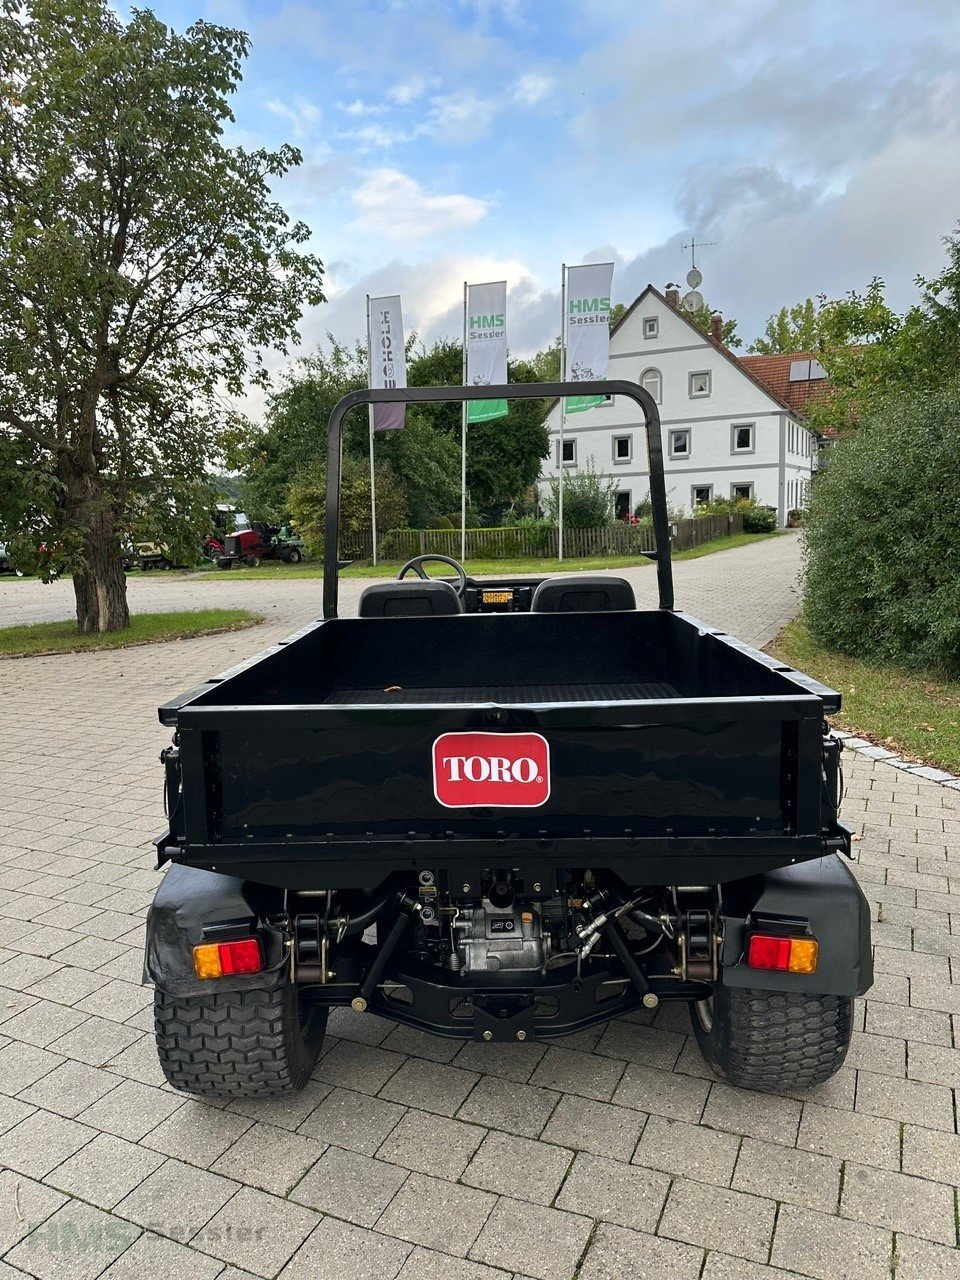 Kommunalfahrzeug des Typs Toro Workman HDX-D, Gebrauchtmaschine in Weidenbach (Bild 3)